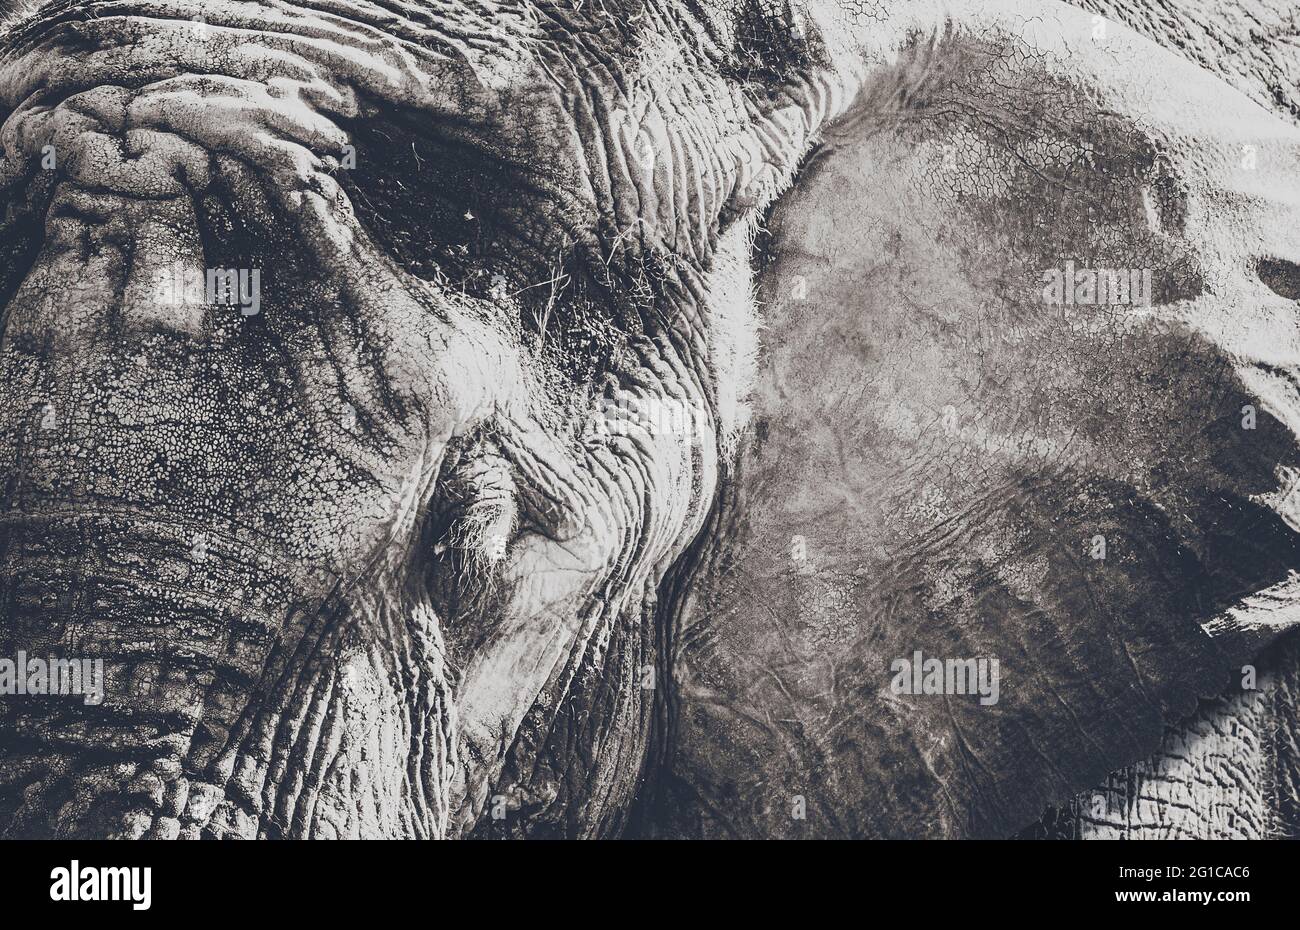 Surreale Aufnahme vom Elefant im Serengeti Tierpark. Nahaufnahme des zahmen, traurigen Dickhäuters. Tierposter Minimalismus. Stock Photo